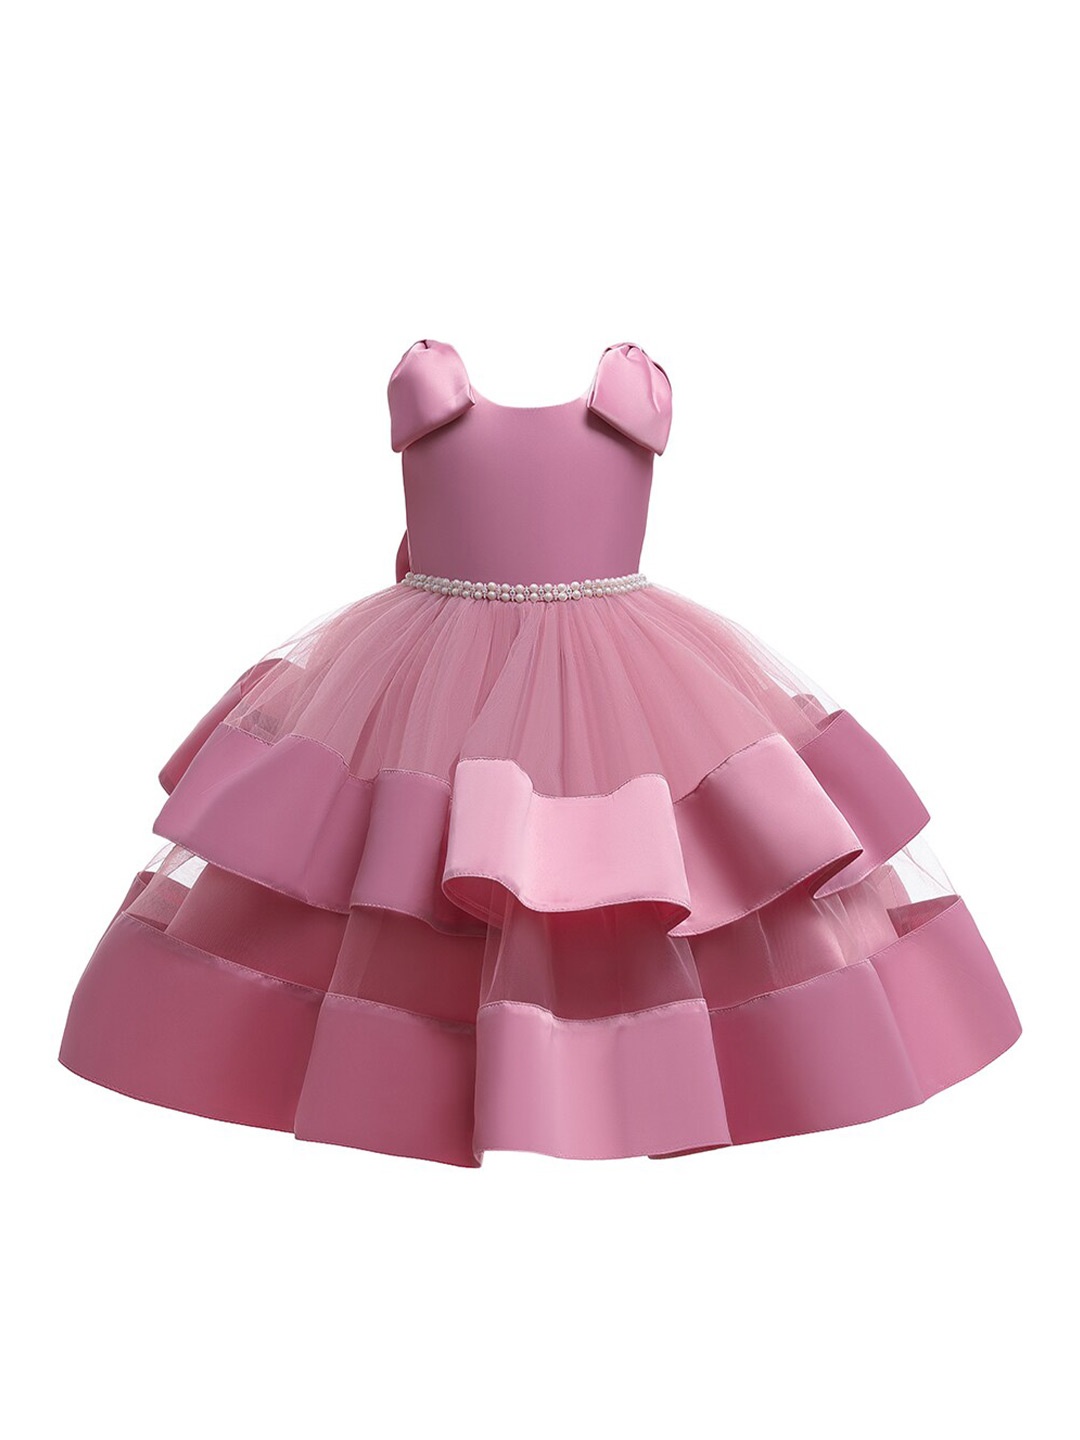 

StyleCast Girls Pink Embellished Round Neck Sleeveless Layered Fit & Flare Midi Dress